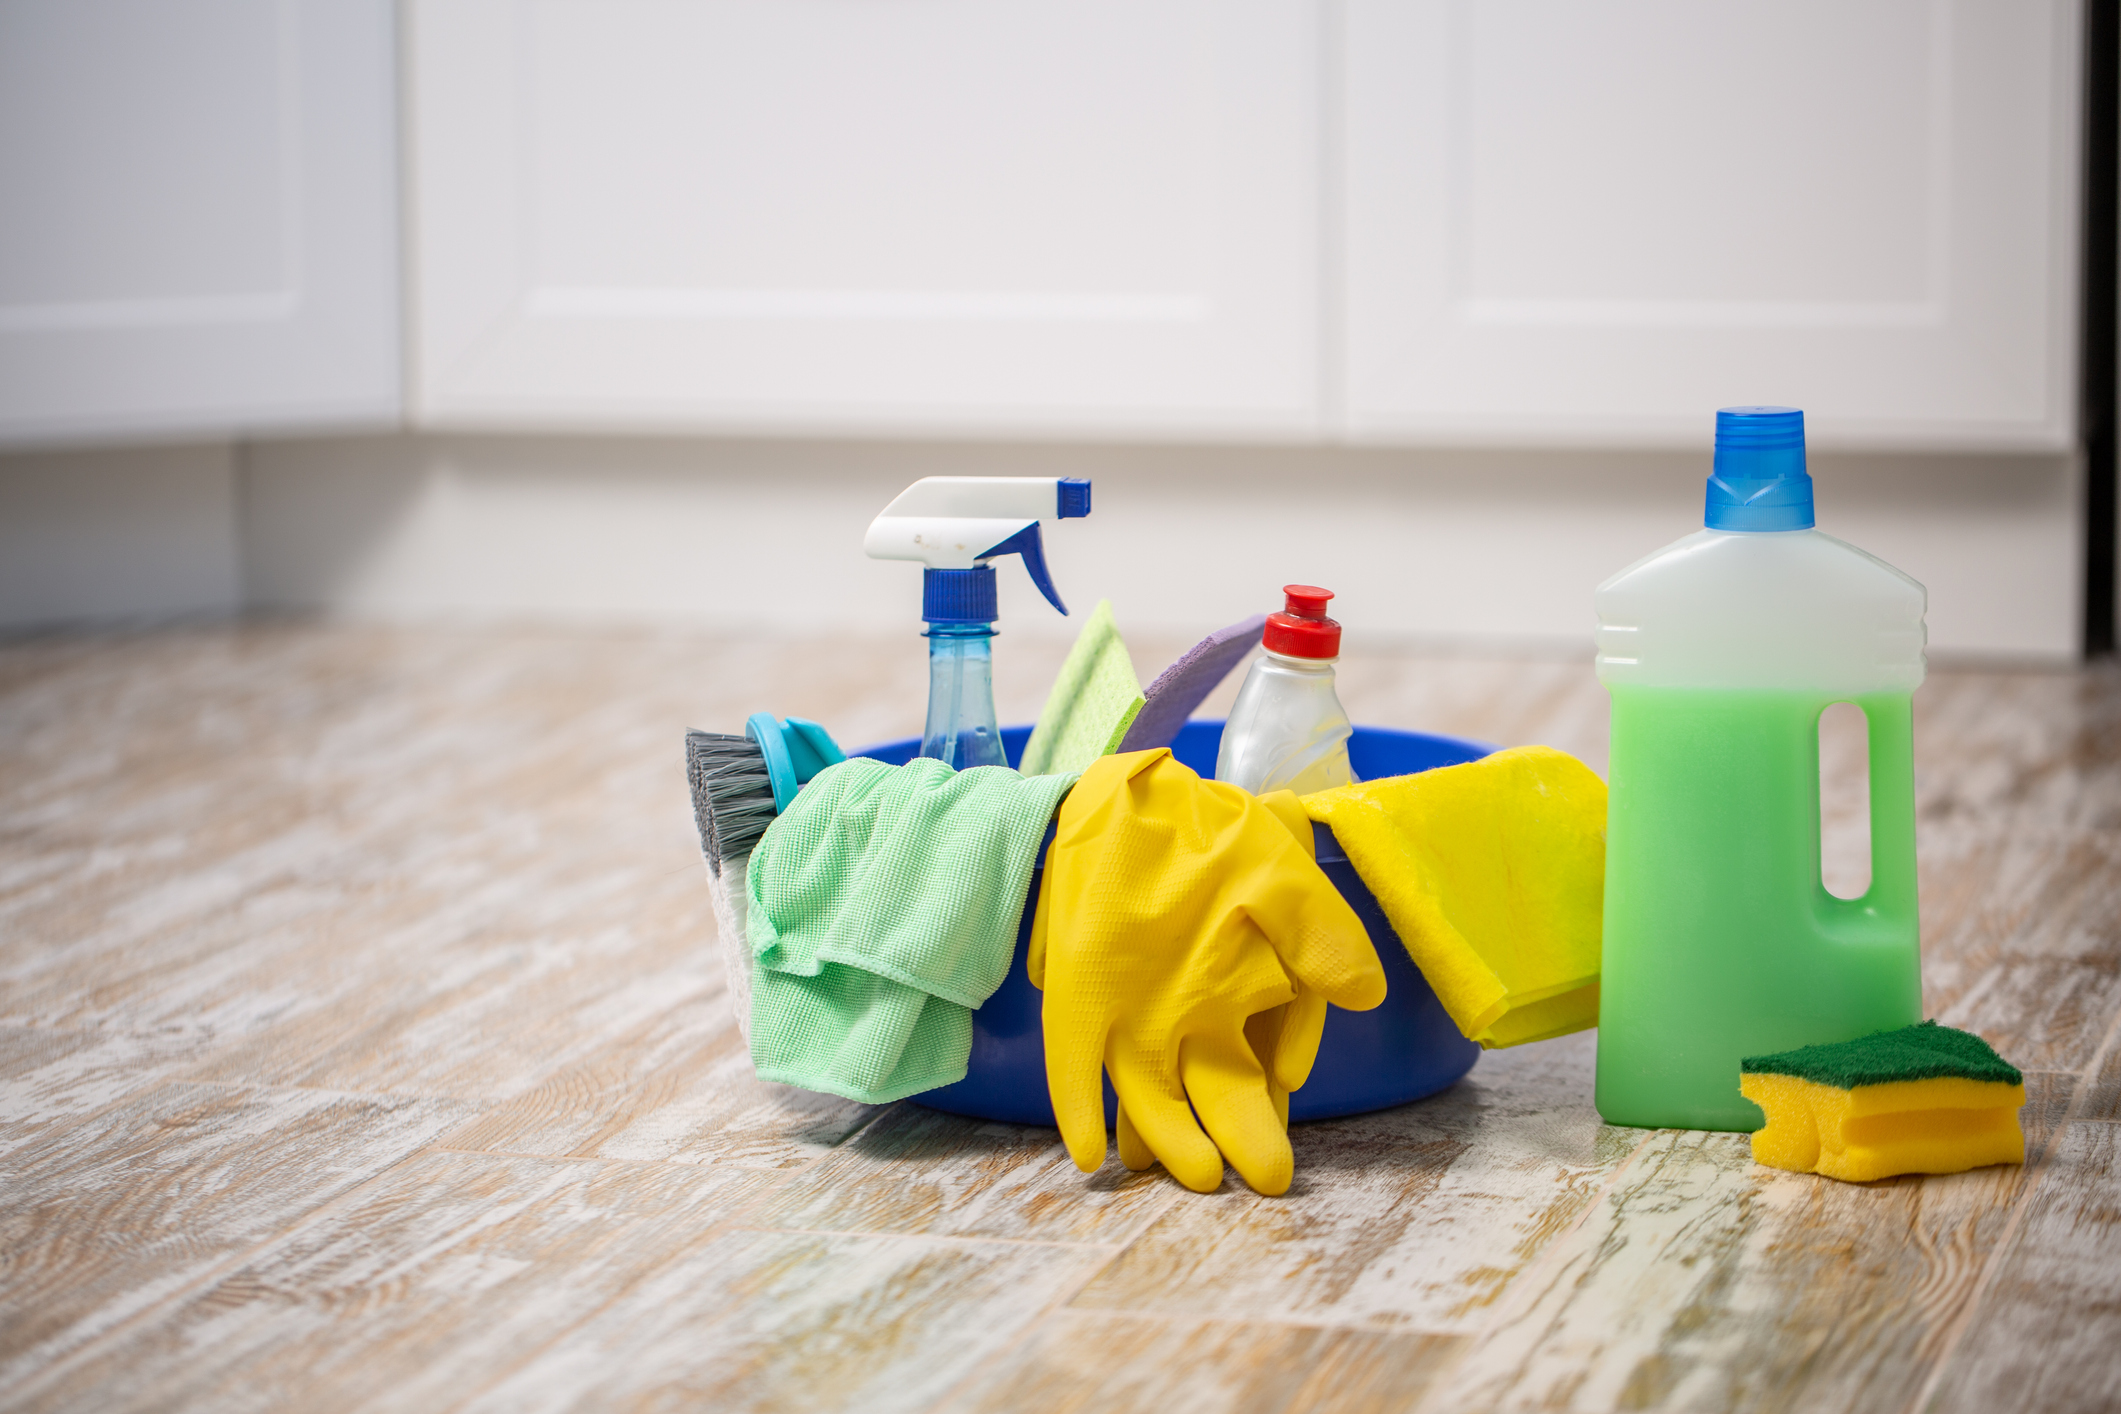 Τα ήξερες; – Αυτά είναι τα έξι τρόφιμα που μπορούν να σε βοηθήσουν στο καθάρισμα του σπιτιού